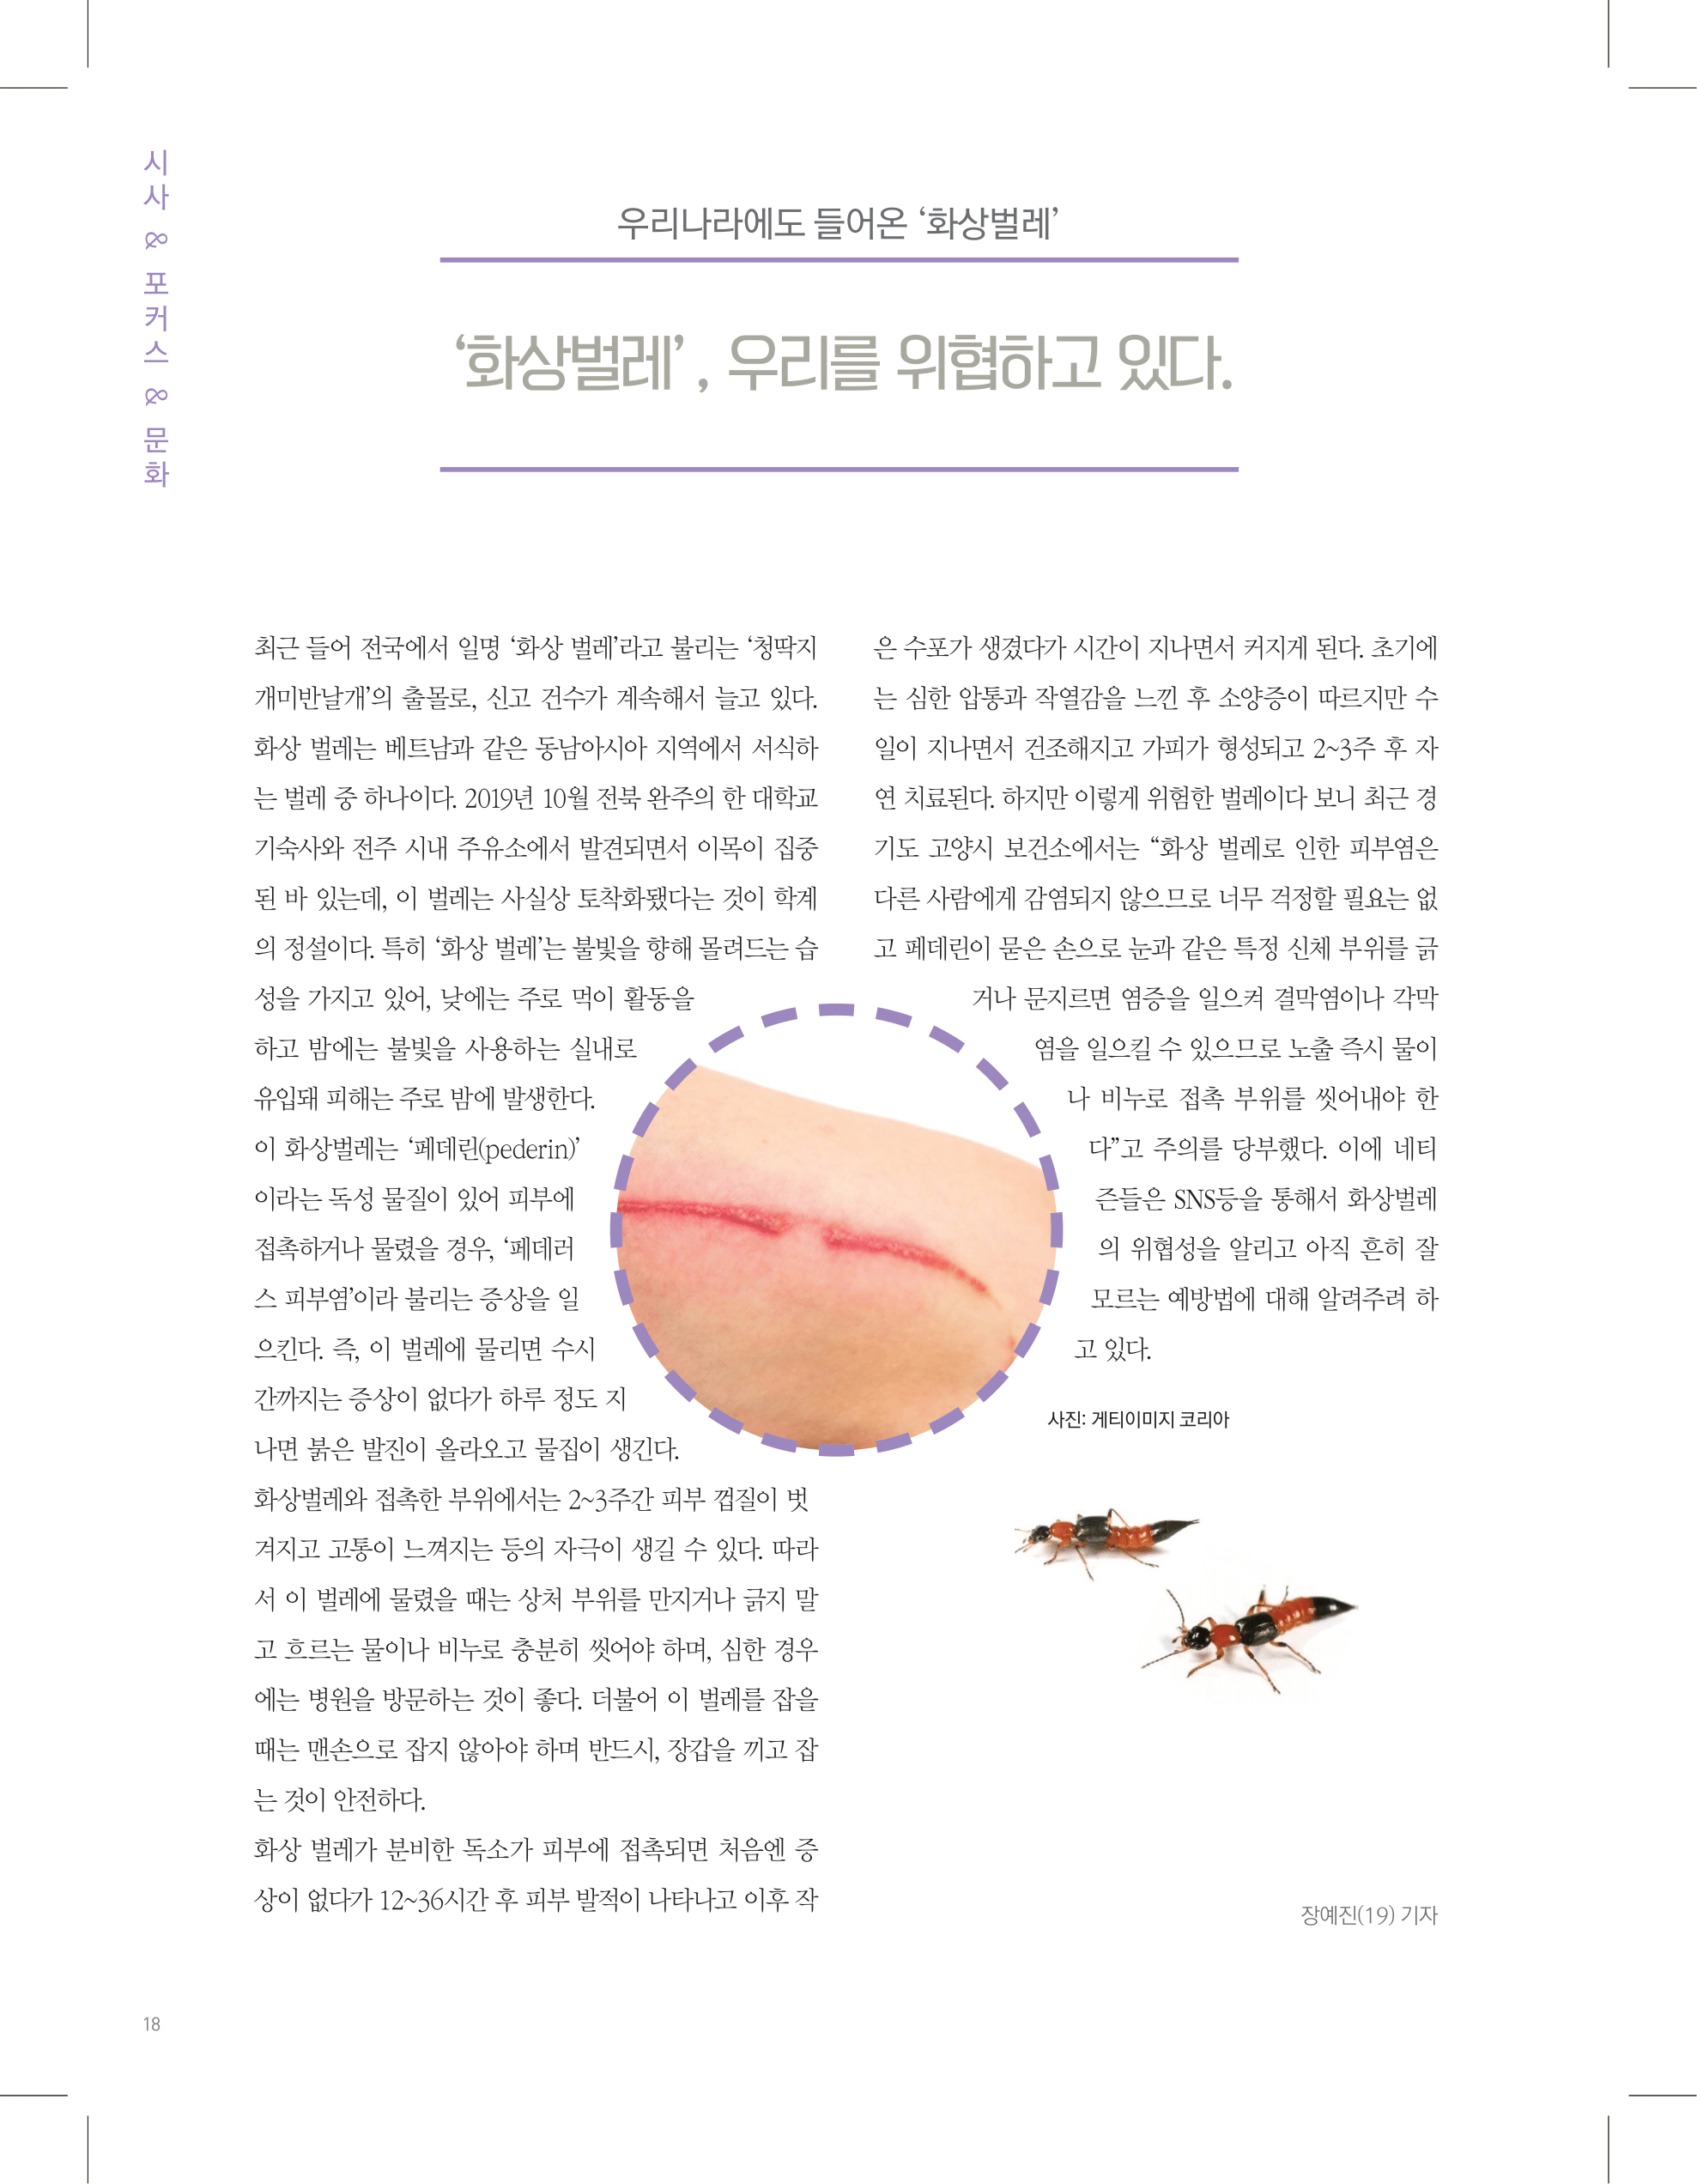 뜻새김 신문 74호 18